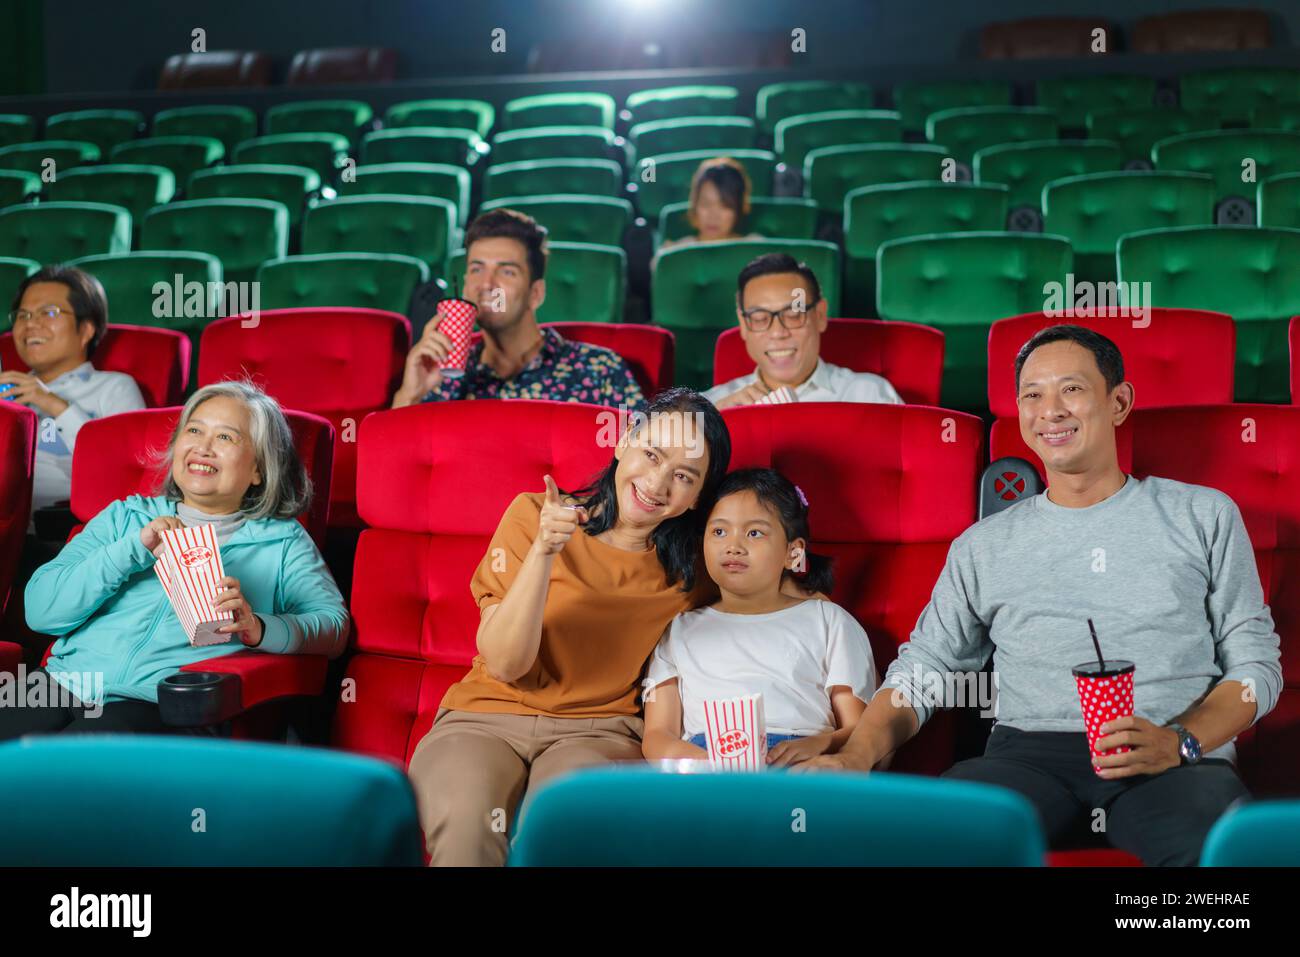 Asiatische Eltern und ihr Kind sehen sich gerne einen Film an, genießen Popcorn zusammen im Kino, gemeinsames Lachen, Binden und die einfachen Freuden eines D Stockfoto